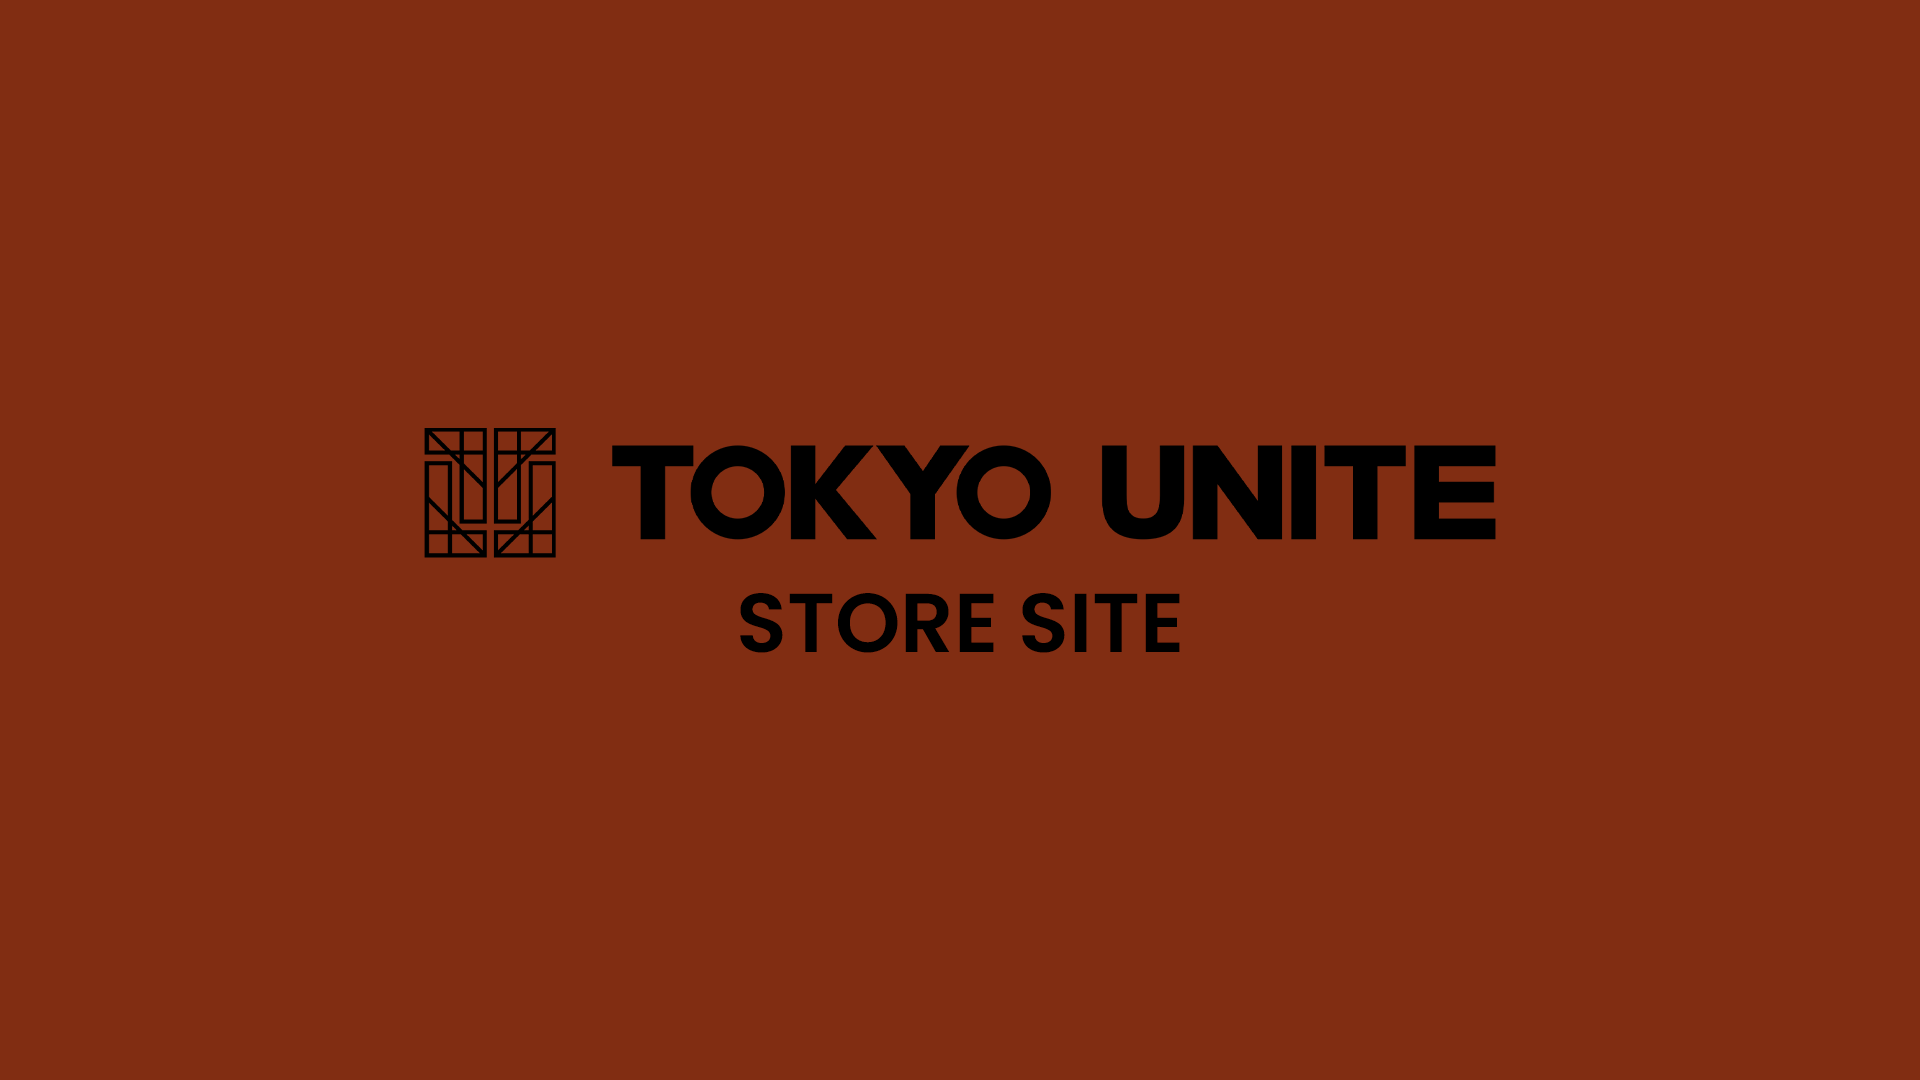 TOKYO UNITE